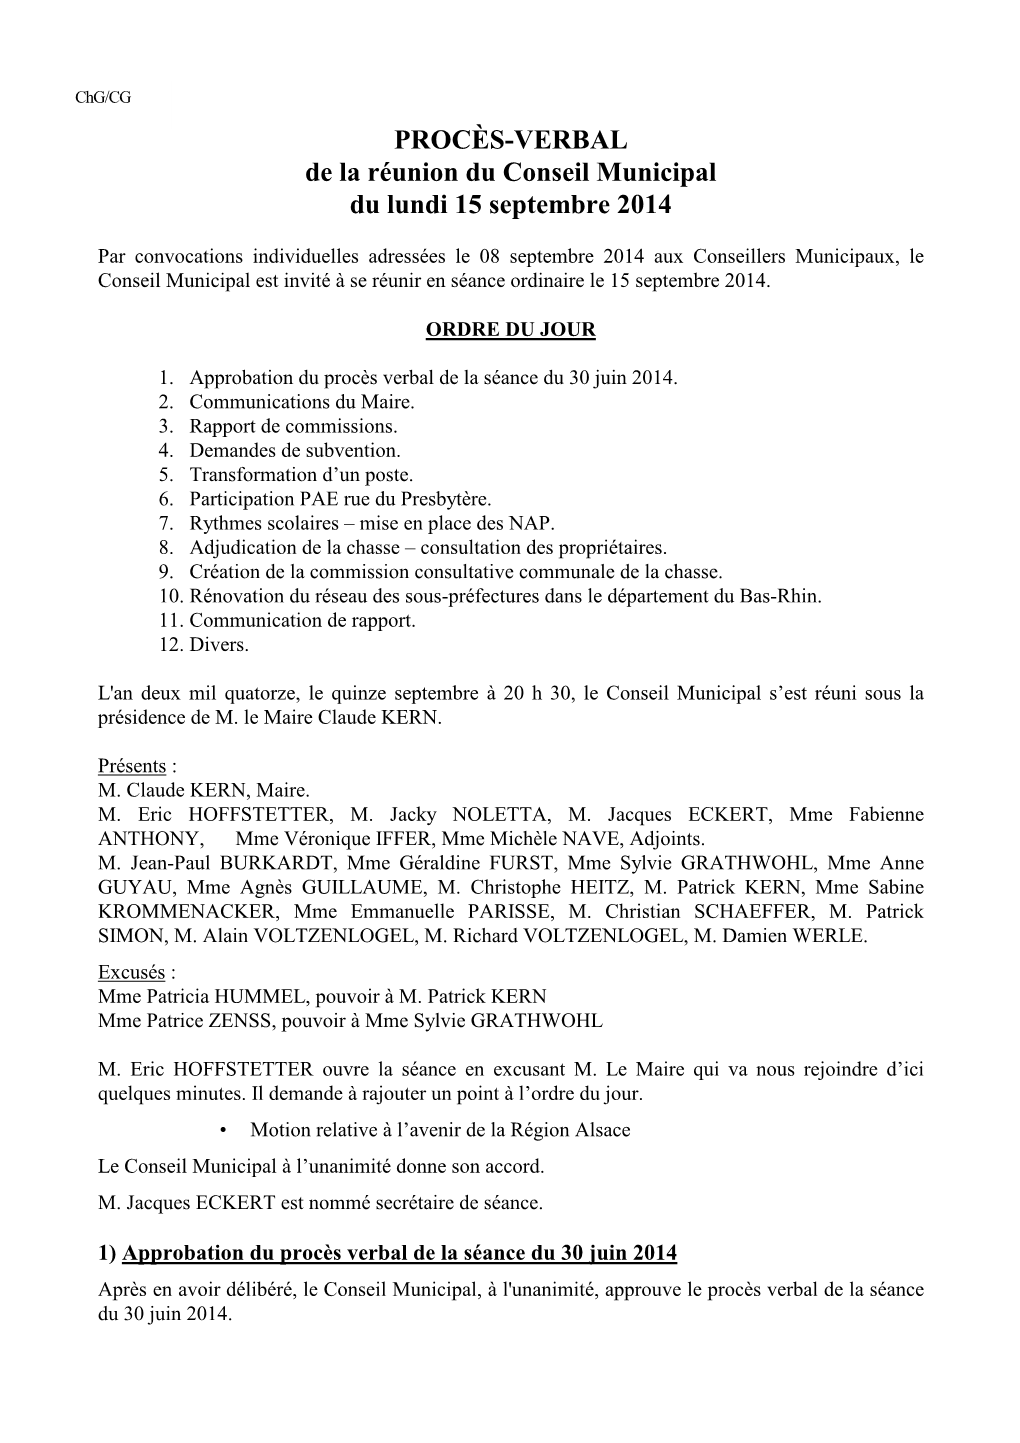 PROCÈS-VERBAL De La Réunion Du Conseil Municipal Du Lundi 15 Septembre 2014